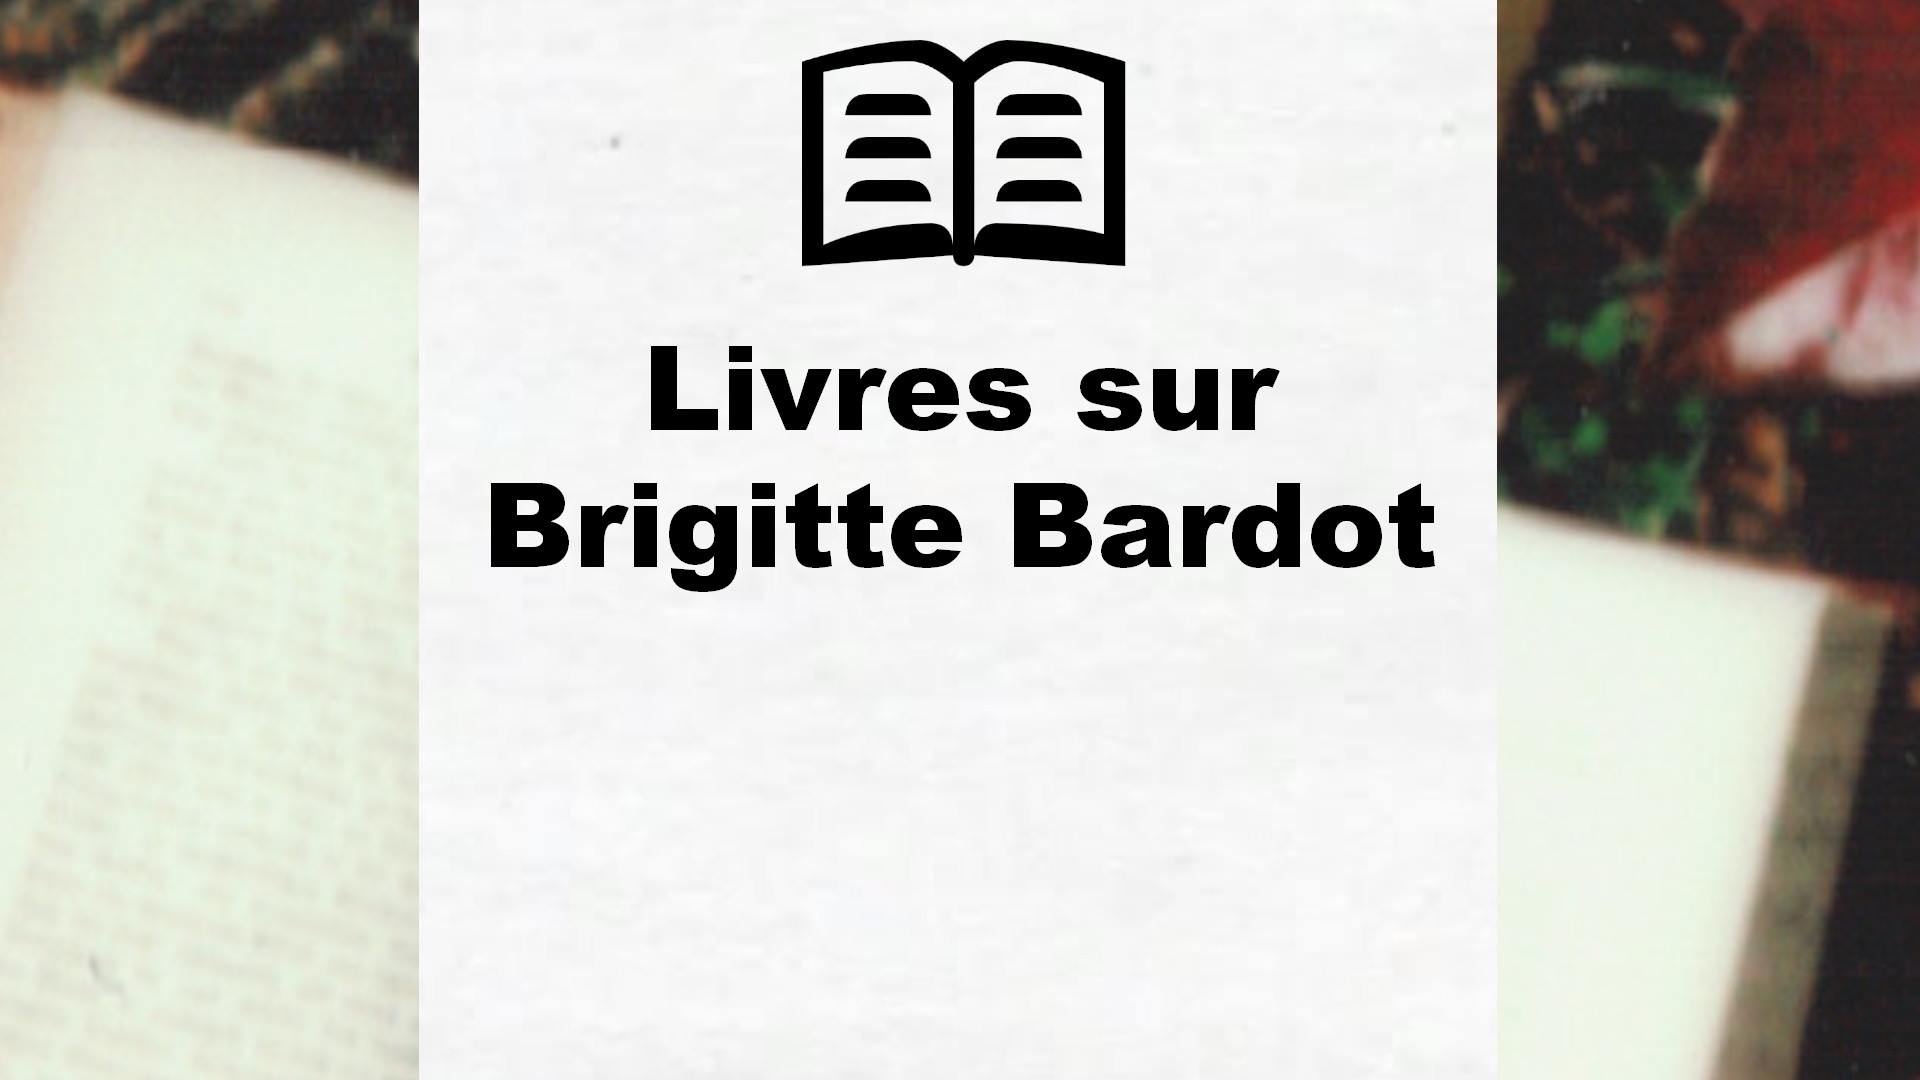 Livres sur Brigitte Bardot